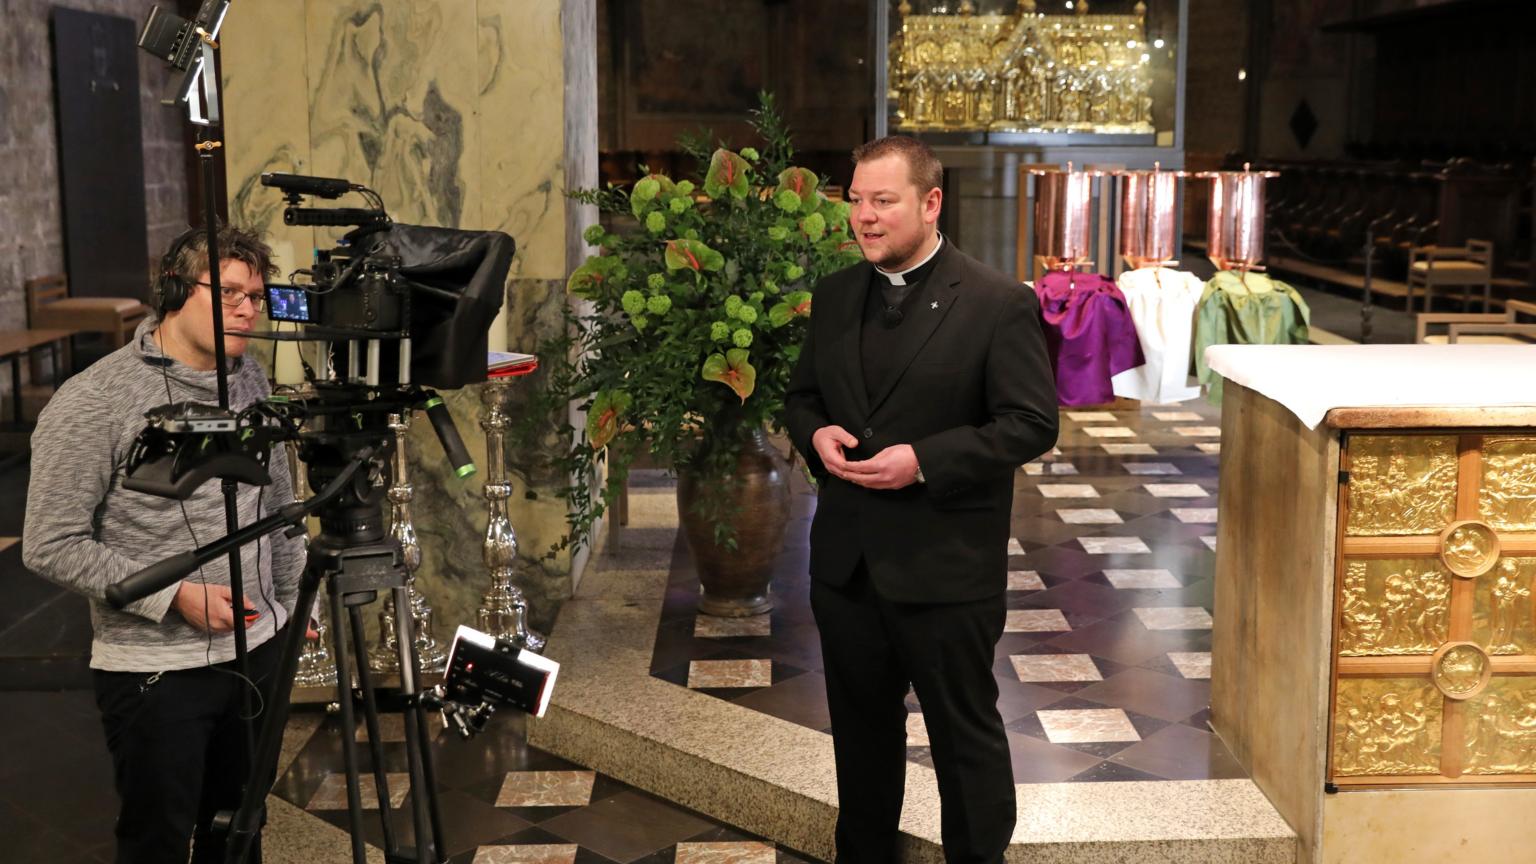 Geistliche Impulse gehen auch in diesem Jahr vom Aachener Dom aus. Vier Geistliche, unter ihnen Domvikar Thomas Schlütter, sprechen kurze Videos ein. (c) Domkapitel Aachen/Andreas Steindl